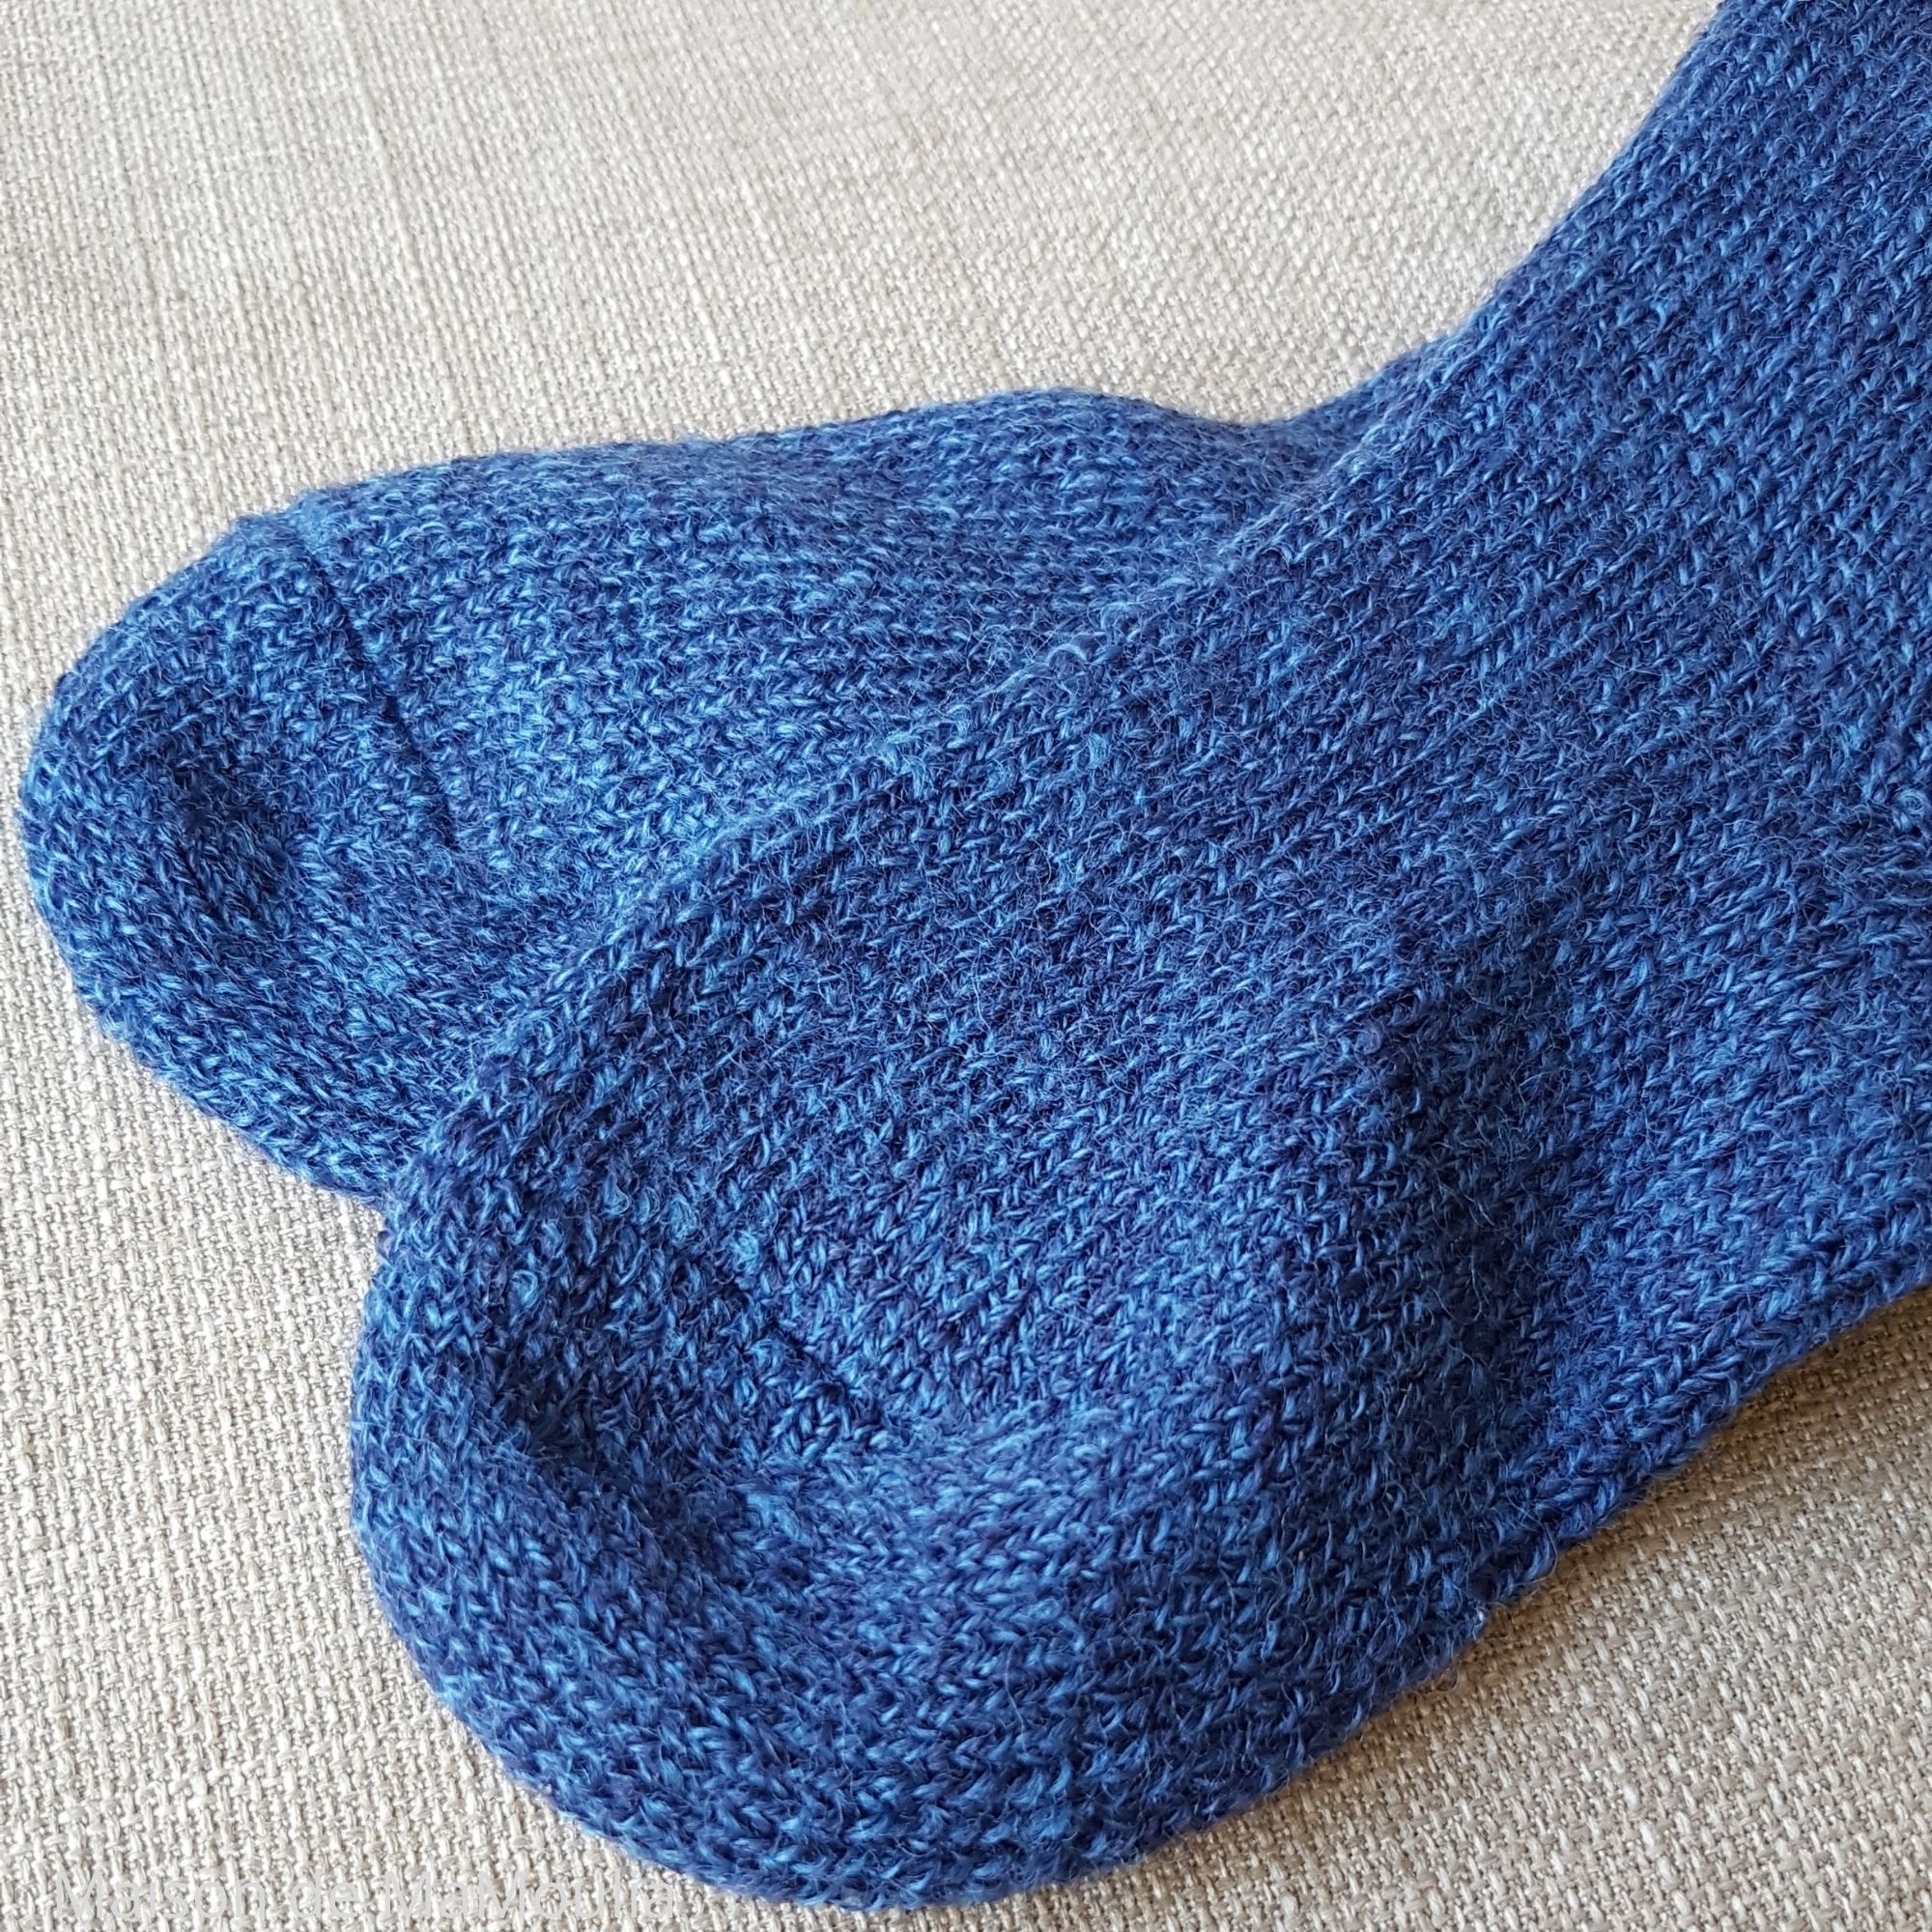 10-chaussettes-chaudes-pure-laine-bio-ecologique-hirsch-natur-bebe-enfant-maison-de-mamoulia-gris-tres-epaisses-bleu-jean-